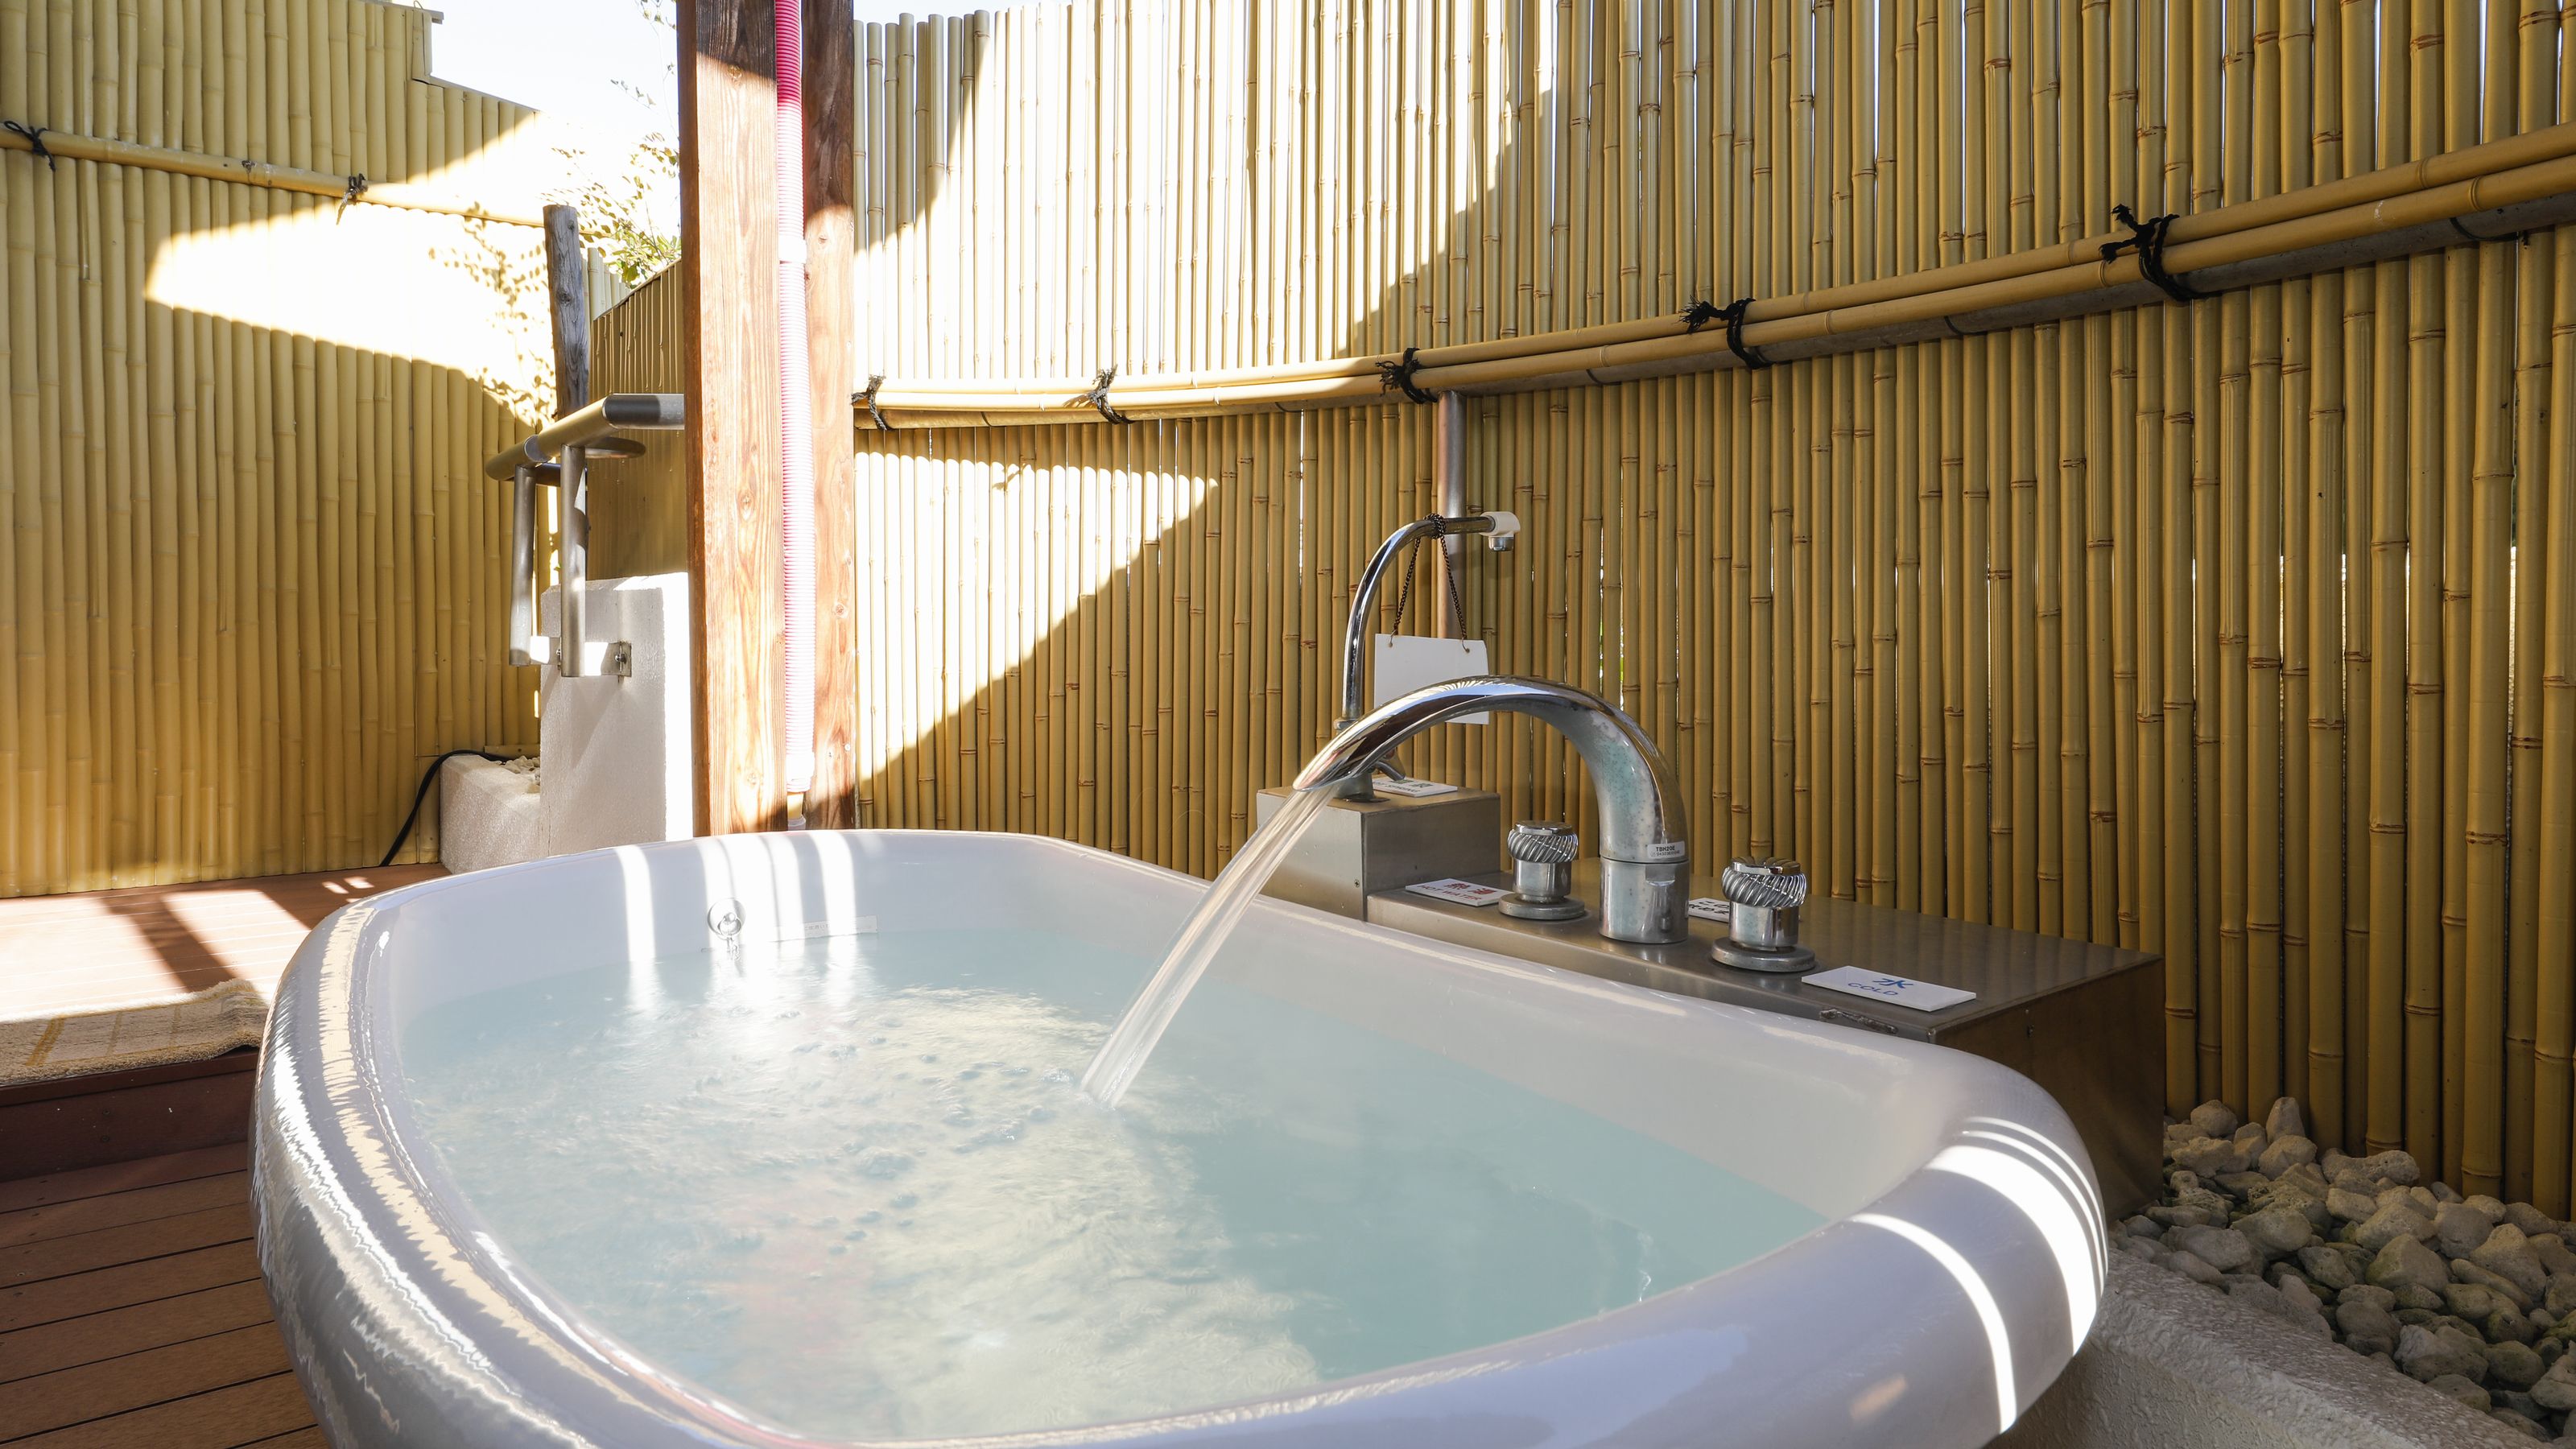 ＊10階露天風呂付客室例：ベランダに外湯としてバスタブタイプのお風呂があります。